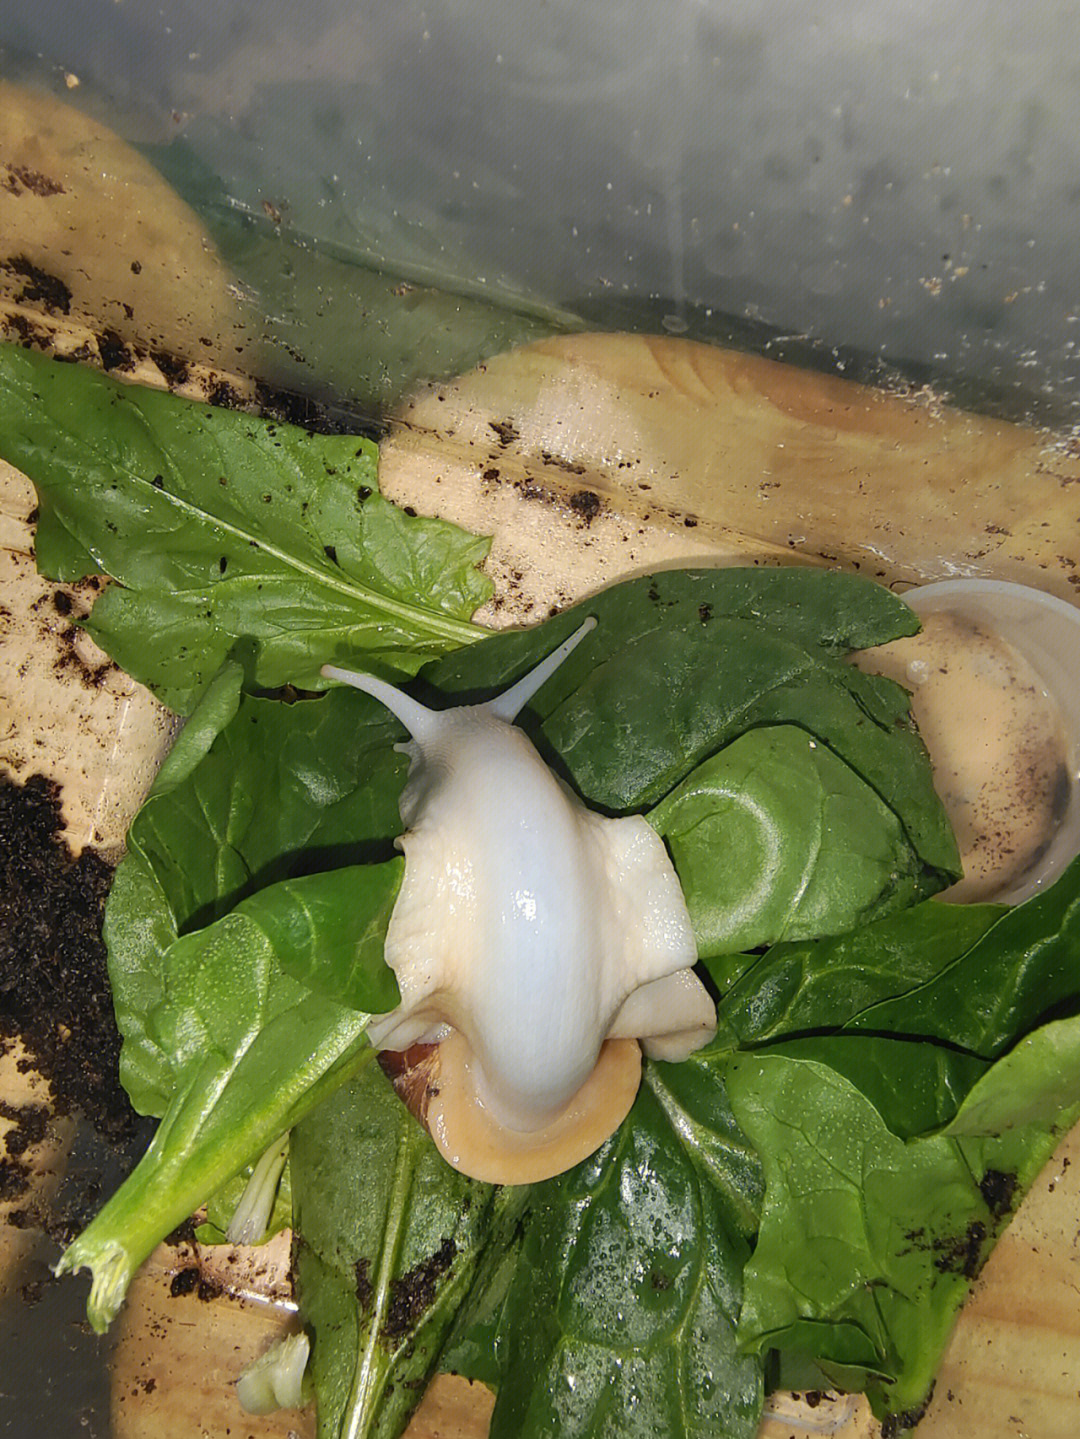 白玉蜗牛身体发青图片